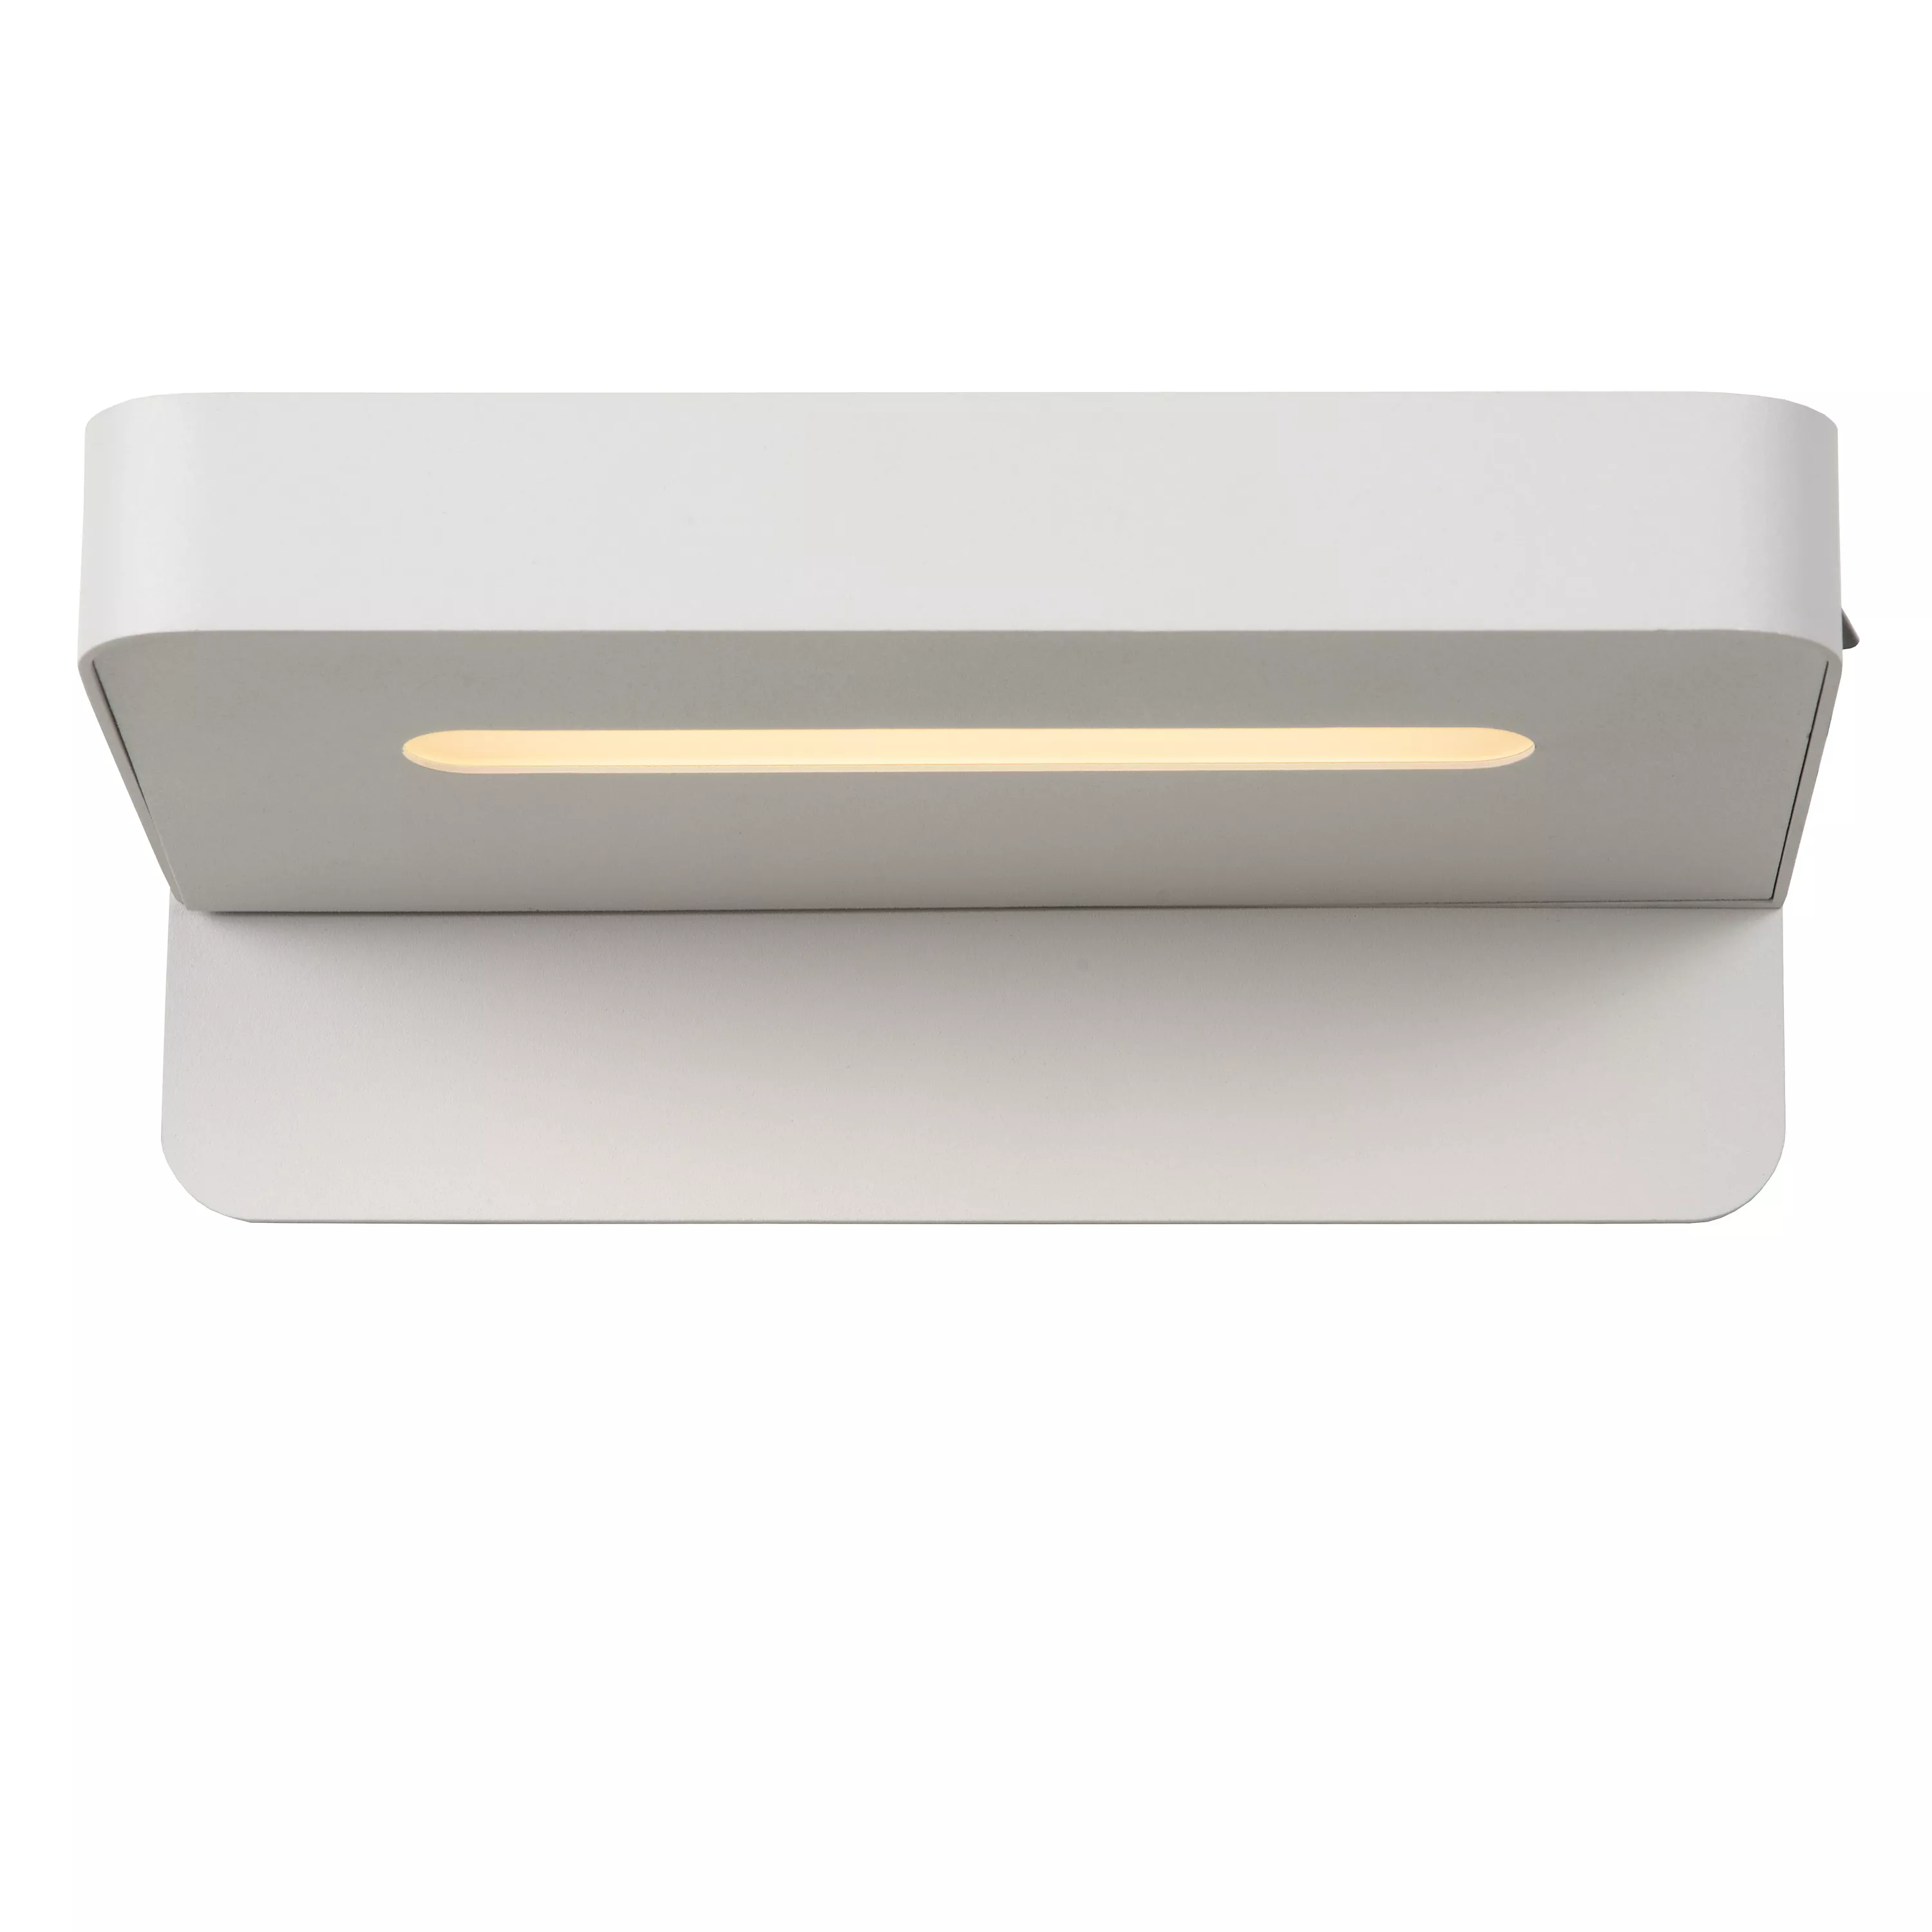 Multifunkčné nástenné svietidlo Atkin v bielej farbe so skrytým zdrojom a zabudovaným USB portom.